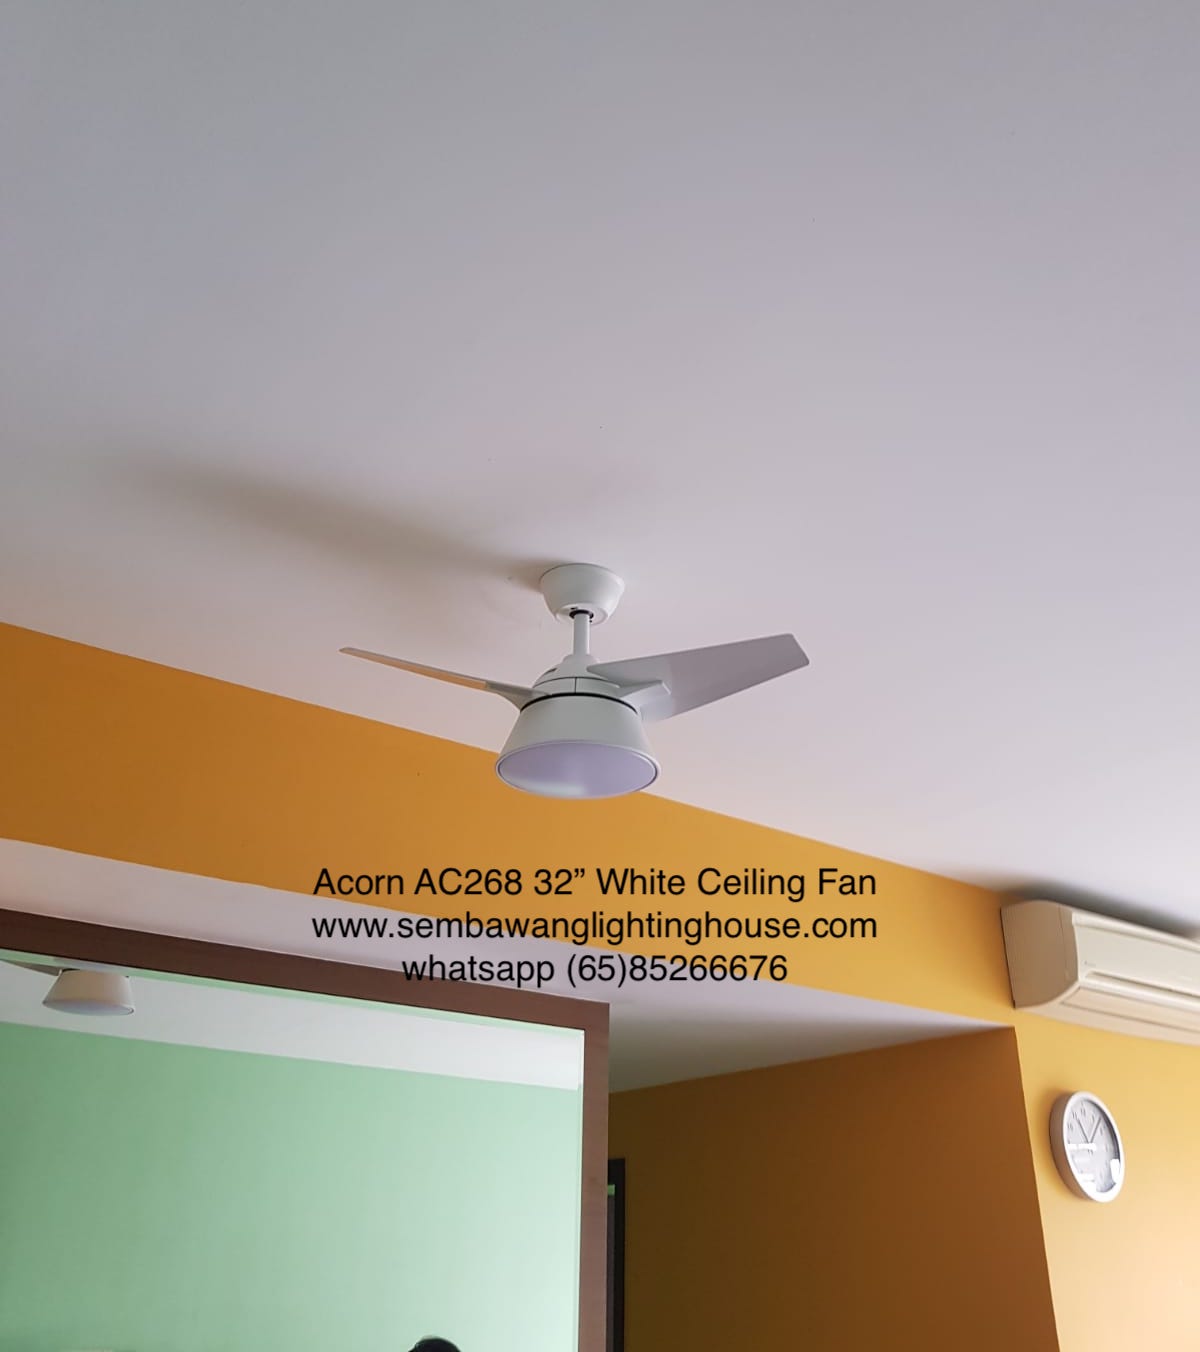 acorn-ac268-32-inch-white-ceiling-fan-sample-sembawang-lighting-house-01.jpg